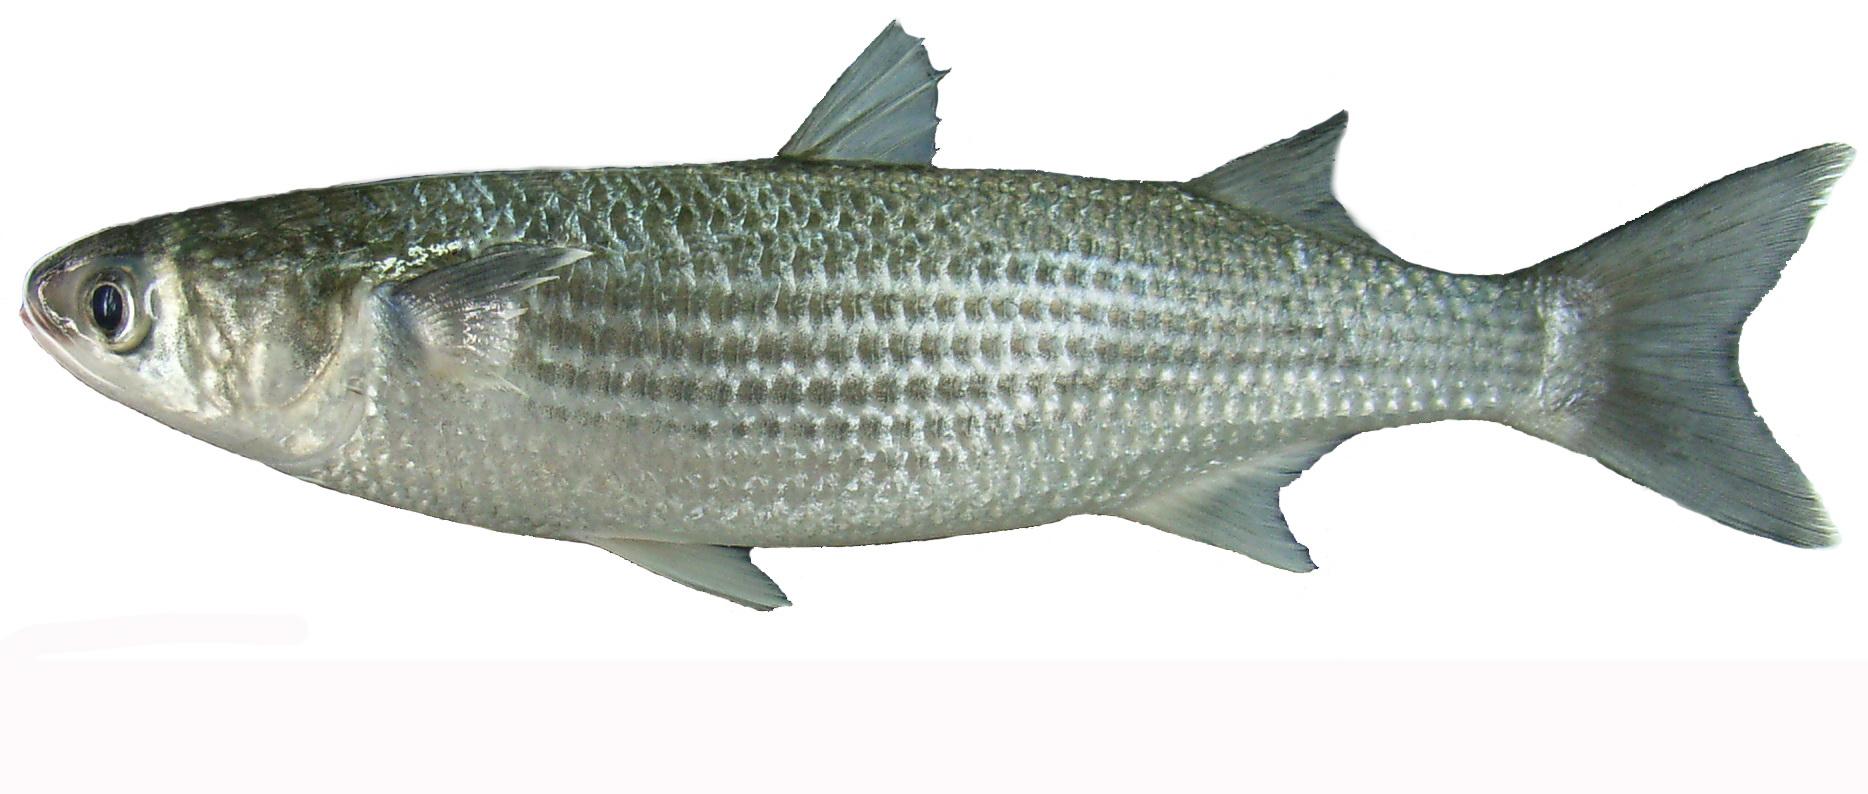 史书上记载的子鱼是一种什么鱼?